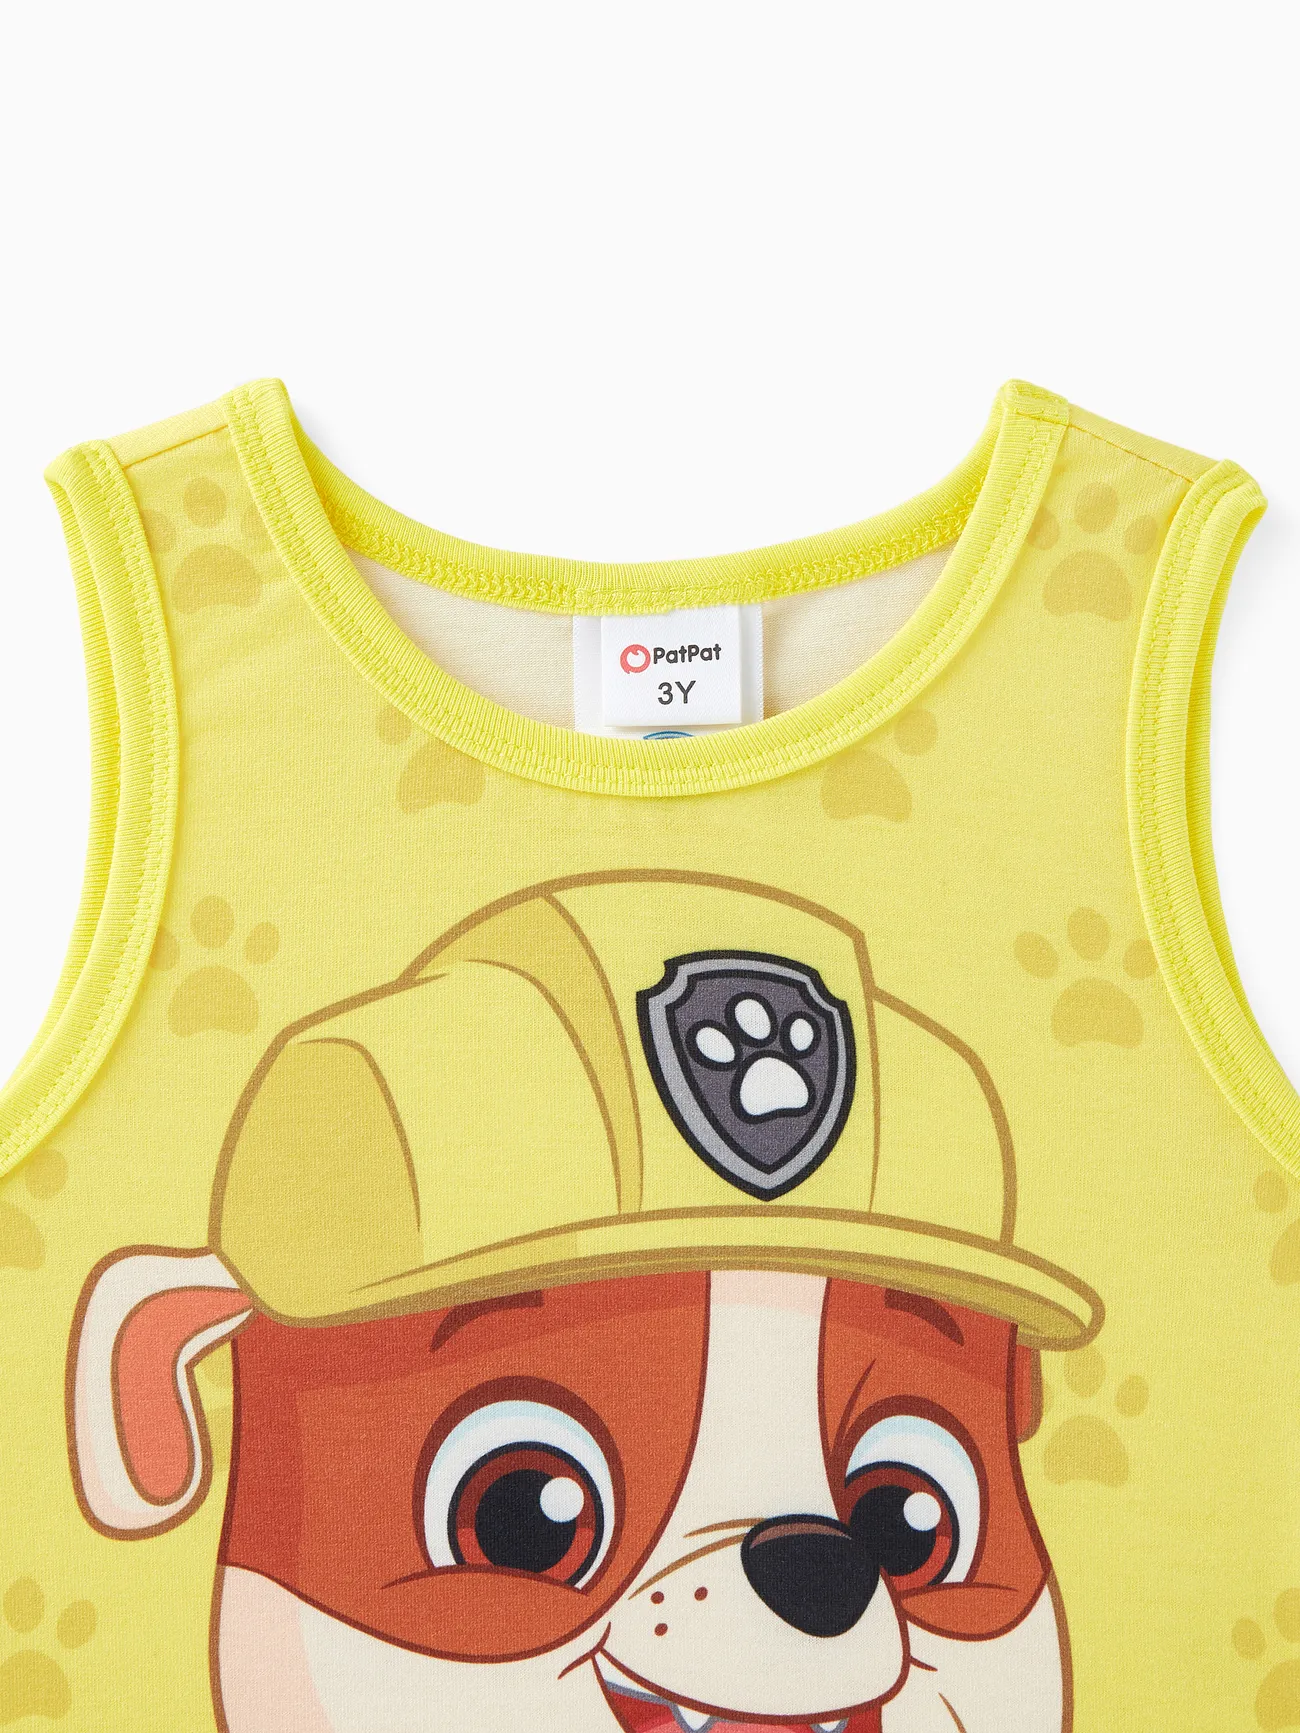 PAW Patrulha Criança Menino Personagem Print Naia™ Tank Top Amarelo big image 1